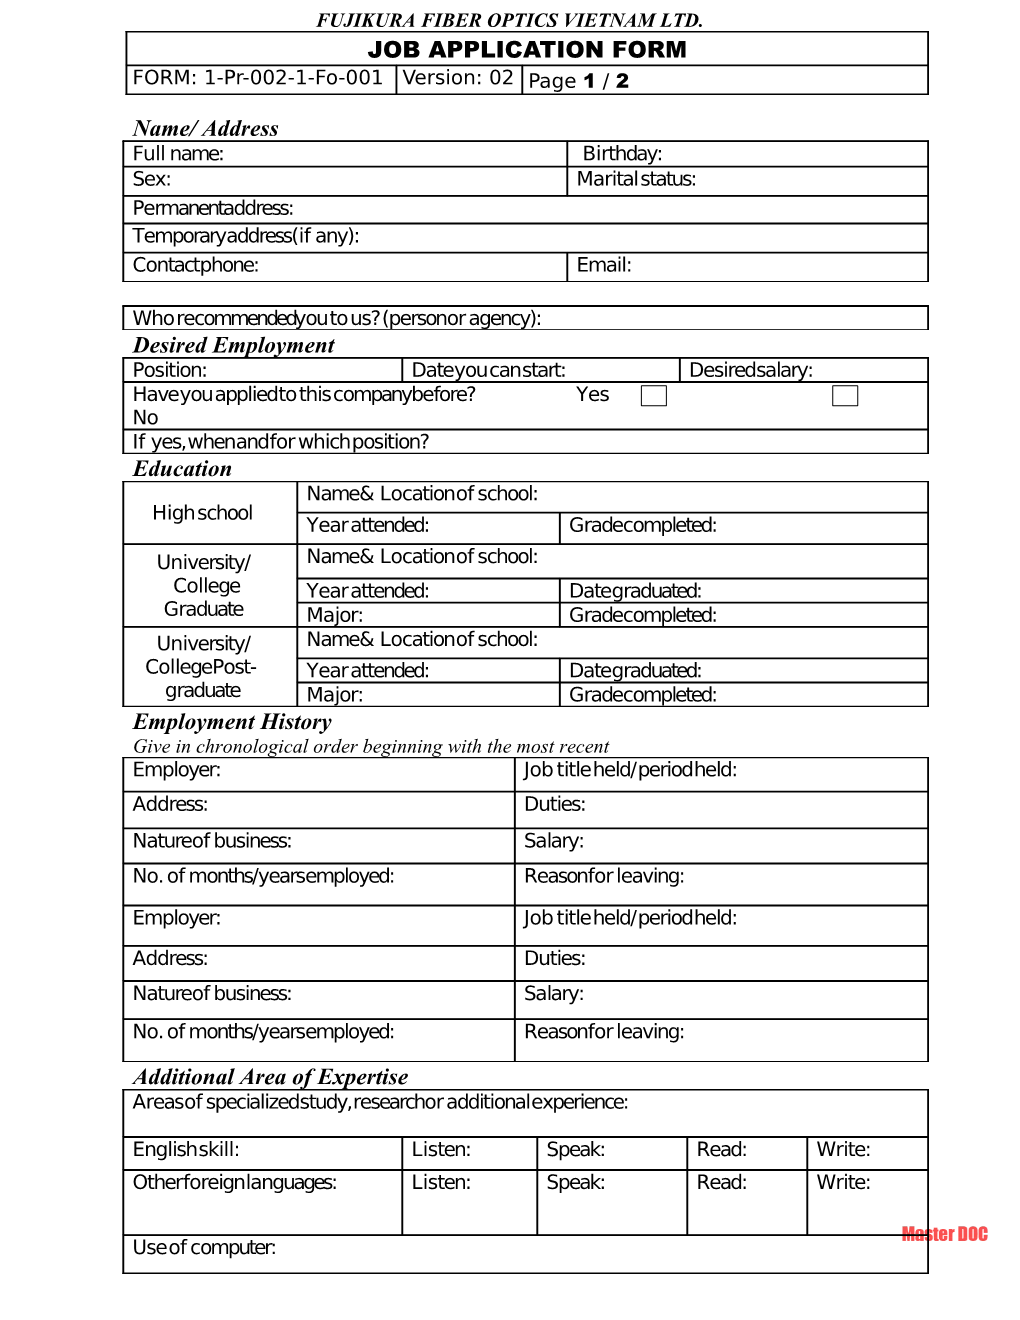 Job Application Form s23